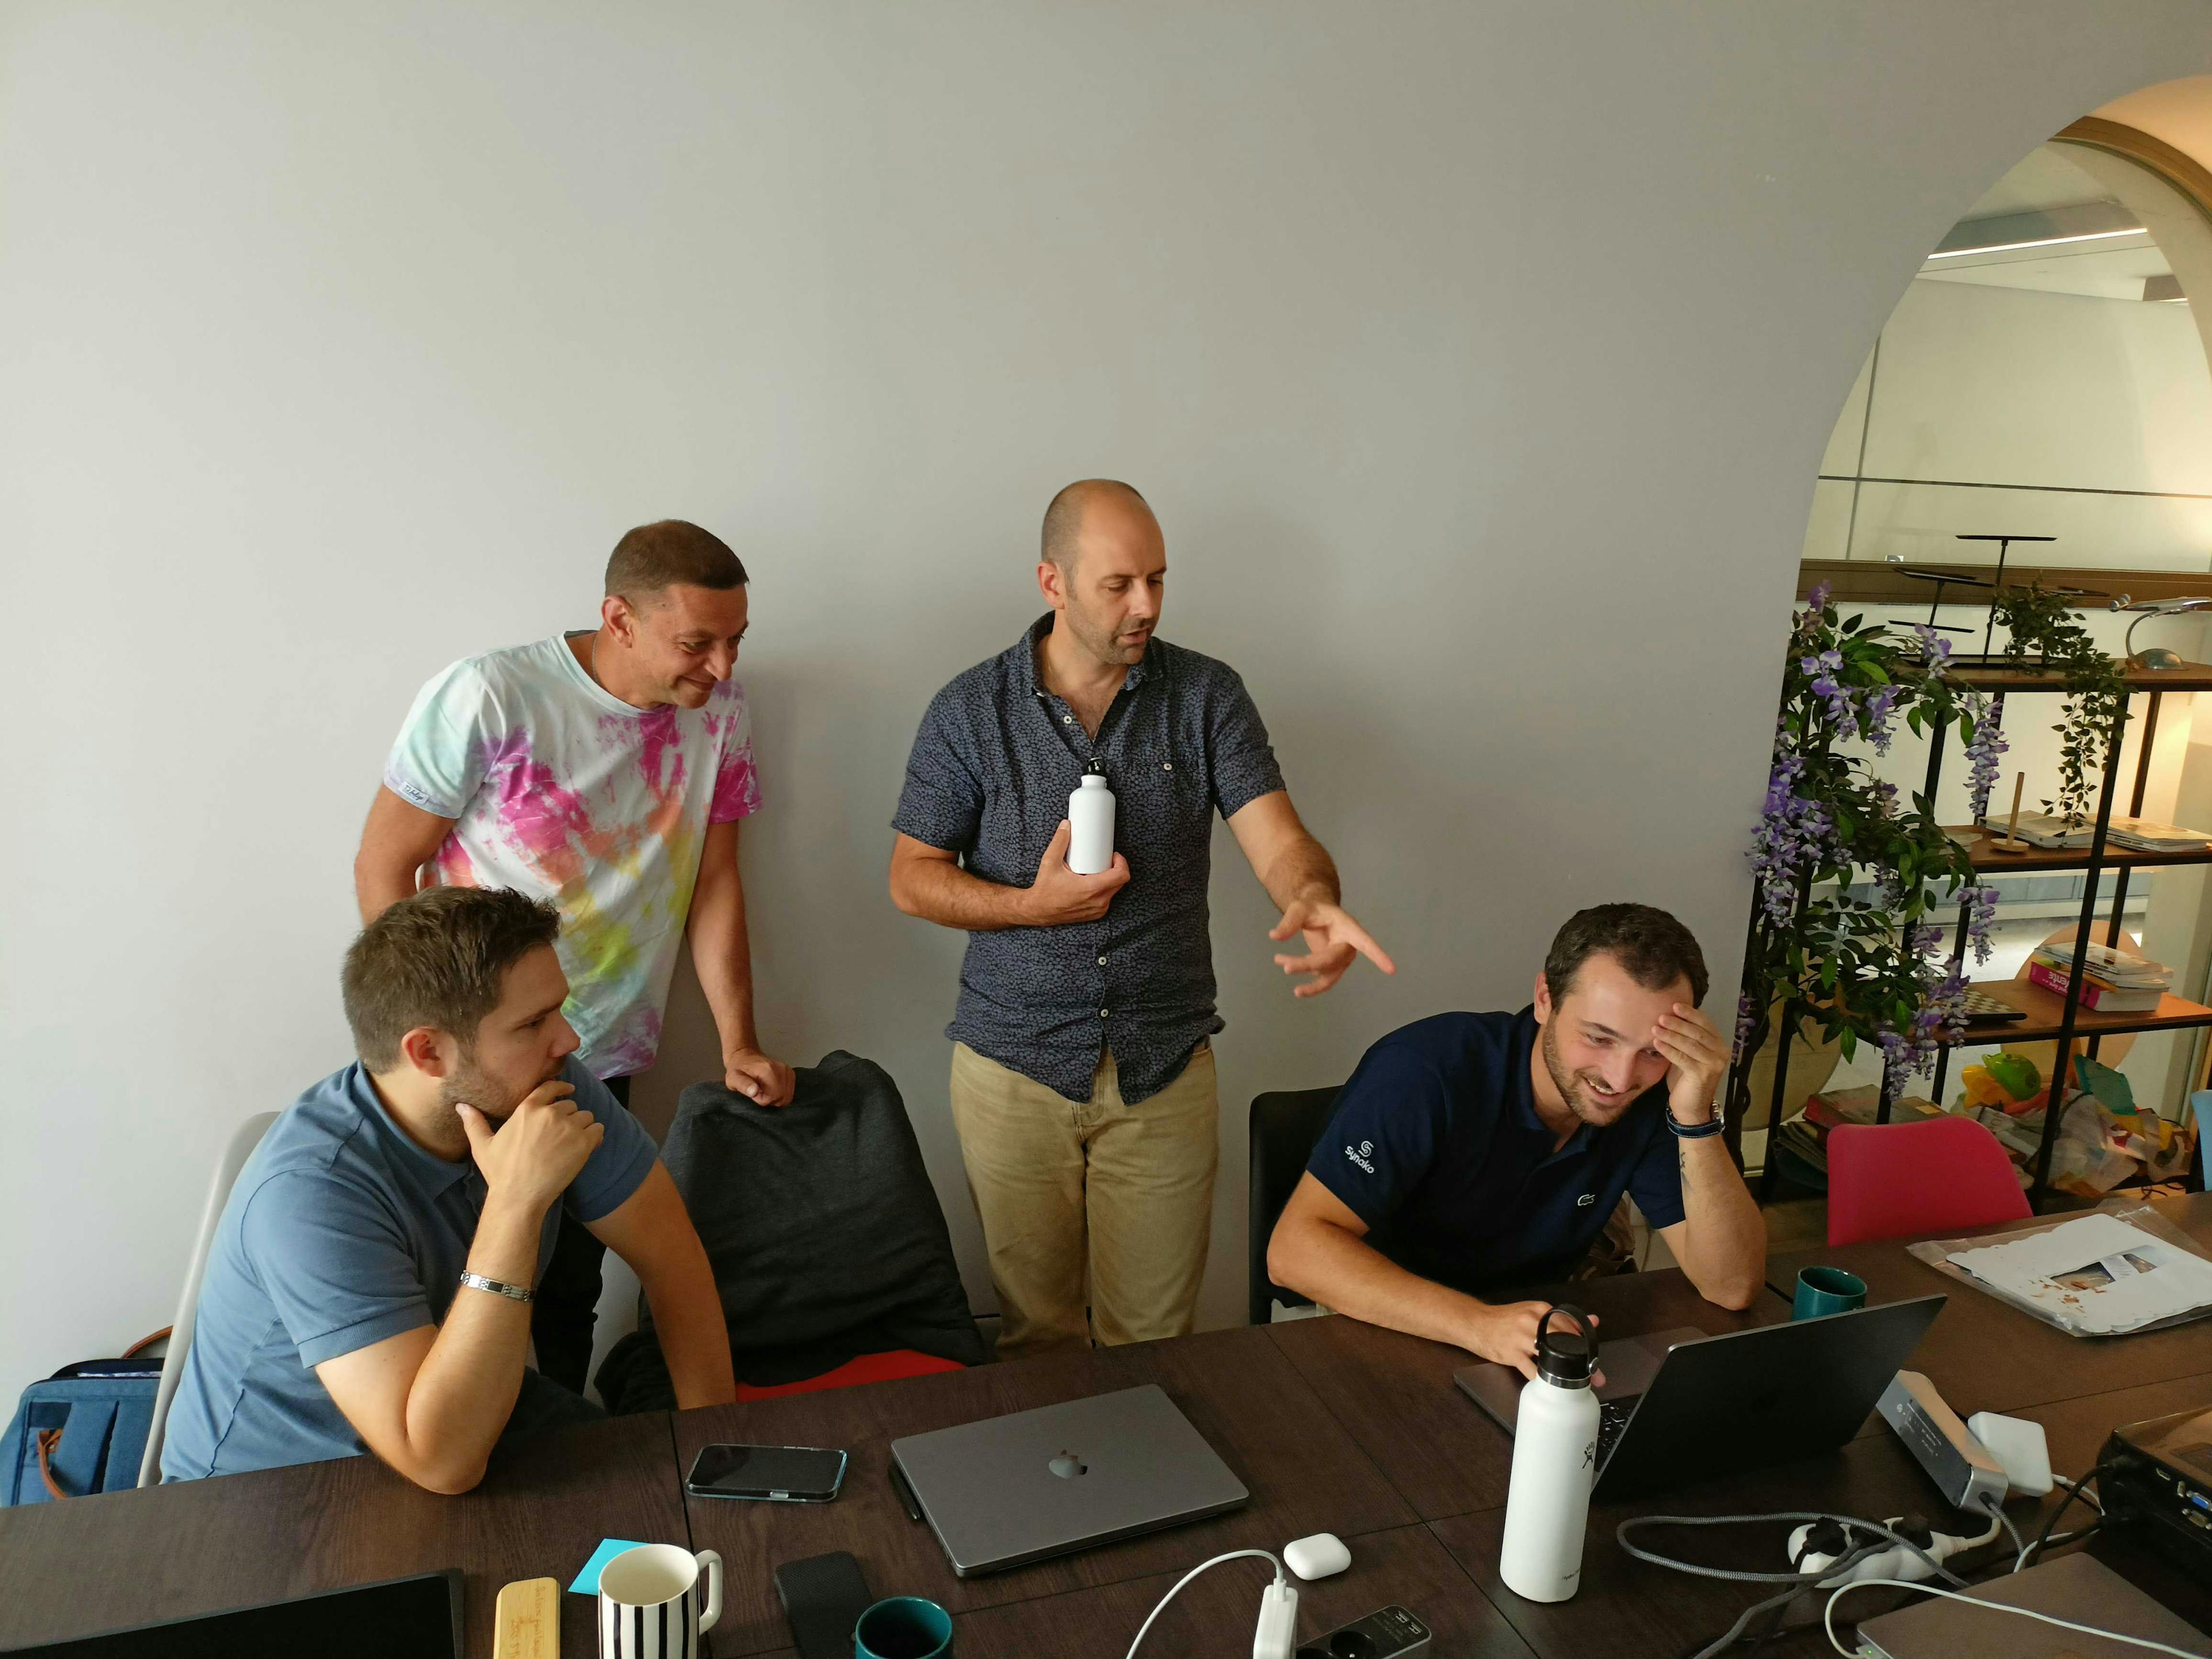 Quatre collaborateurs de Synako échangent ensemble devant la démo d'une nouvelle techno web.